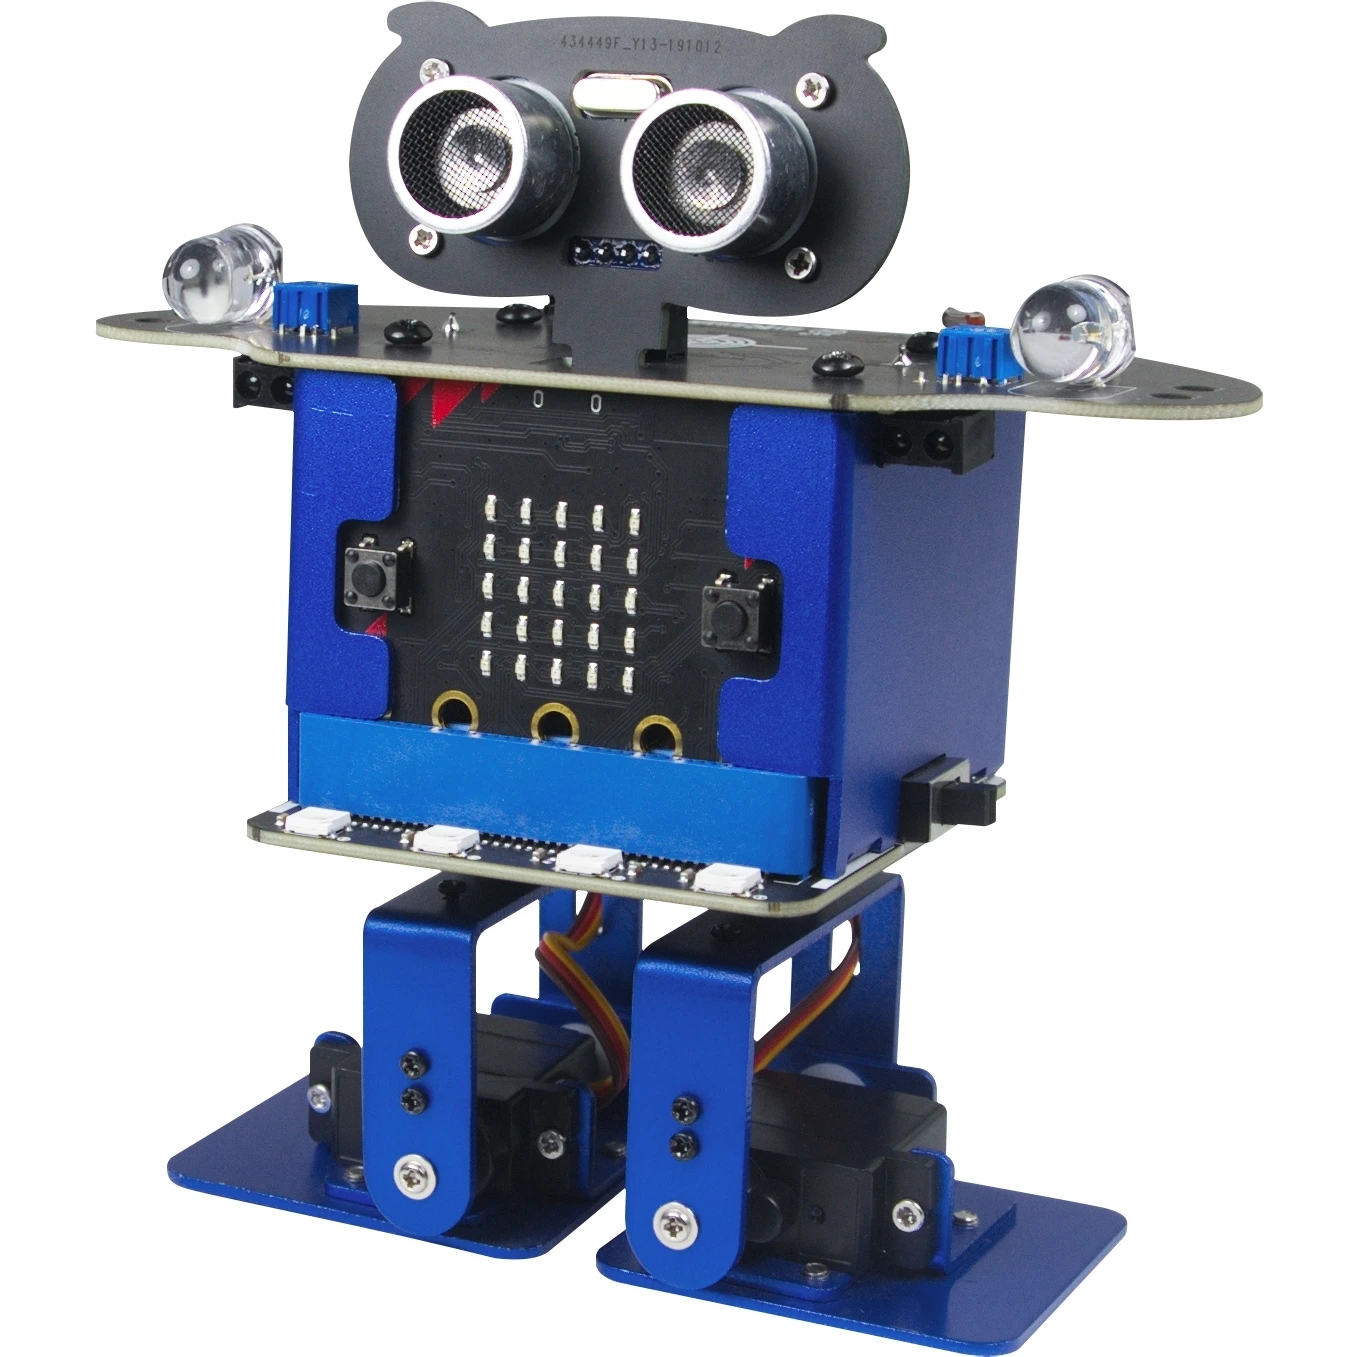 XiaoR Geek паровой Обучающий робот, игрушки для детей, Фабричный биопедальный робот, игрушка с микробитами, кодирование, образование, танцевальный робот